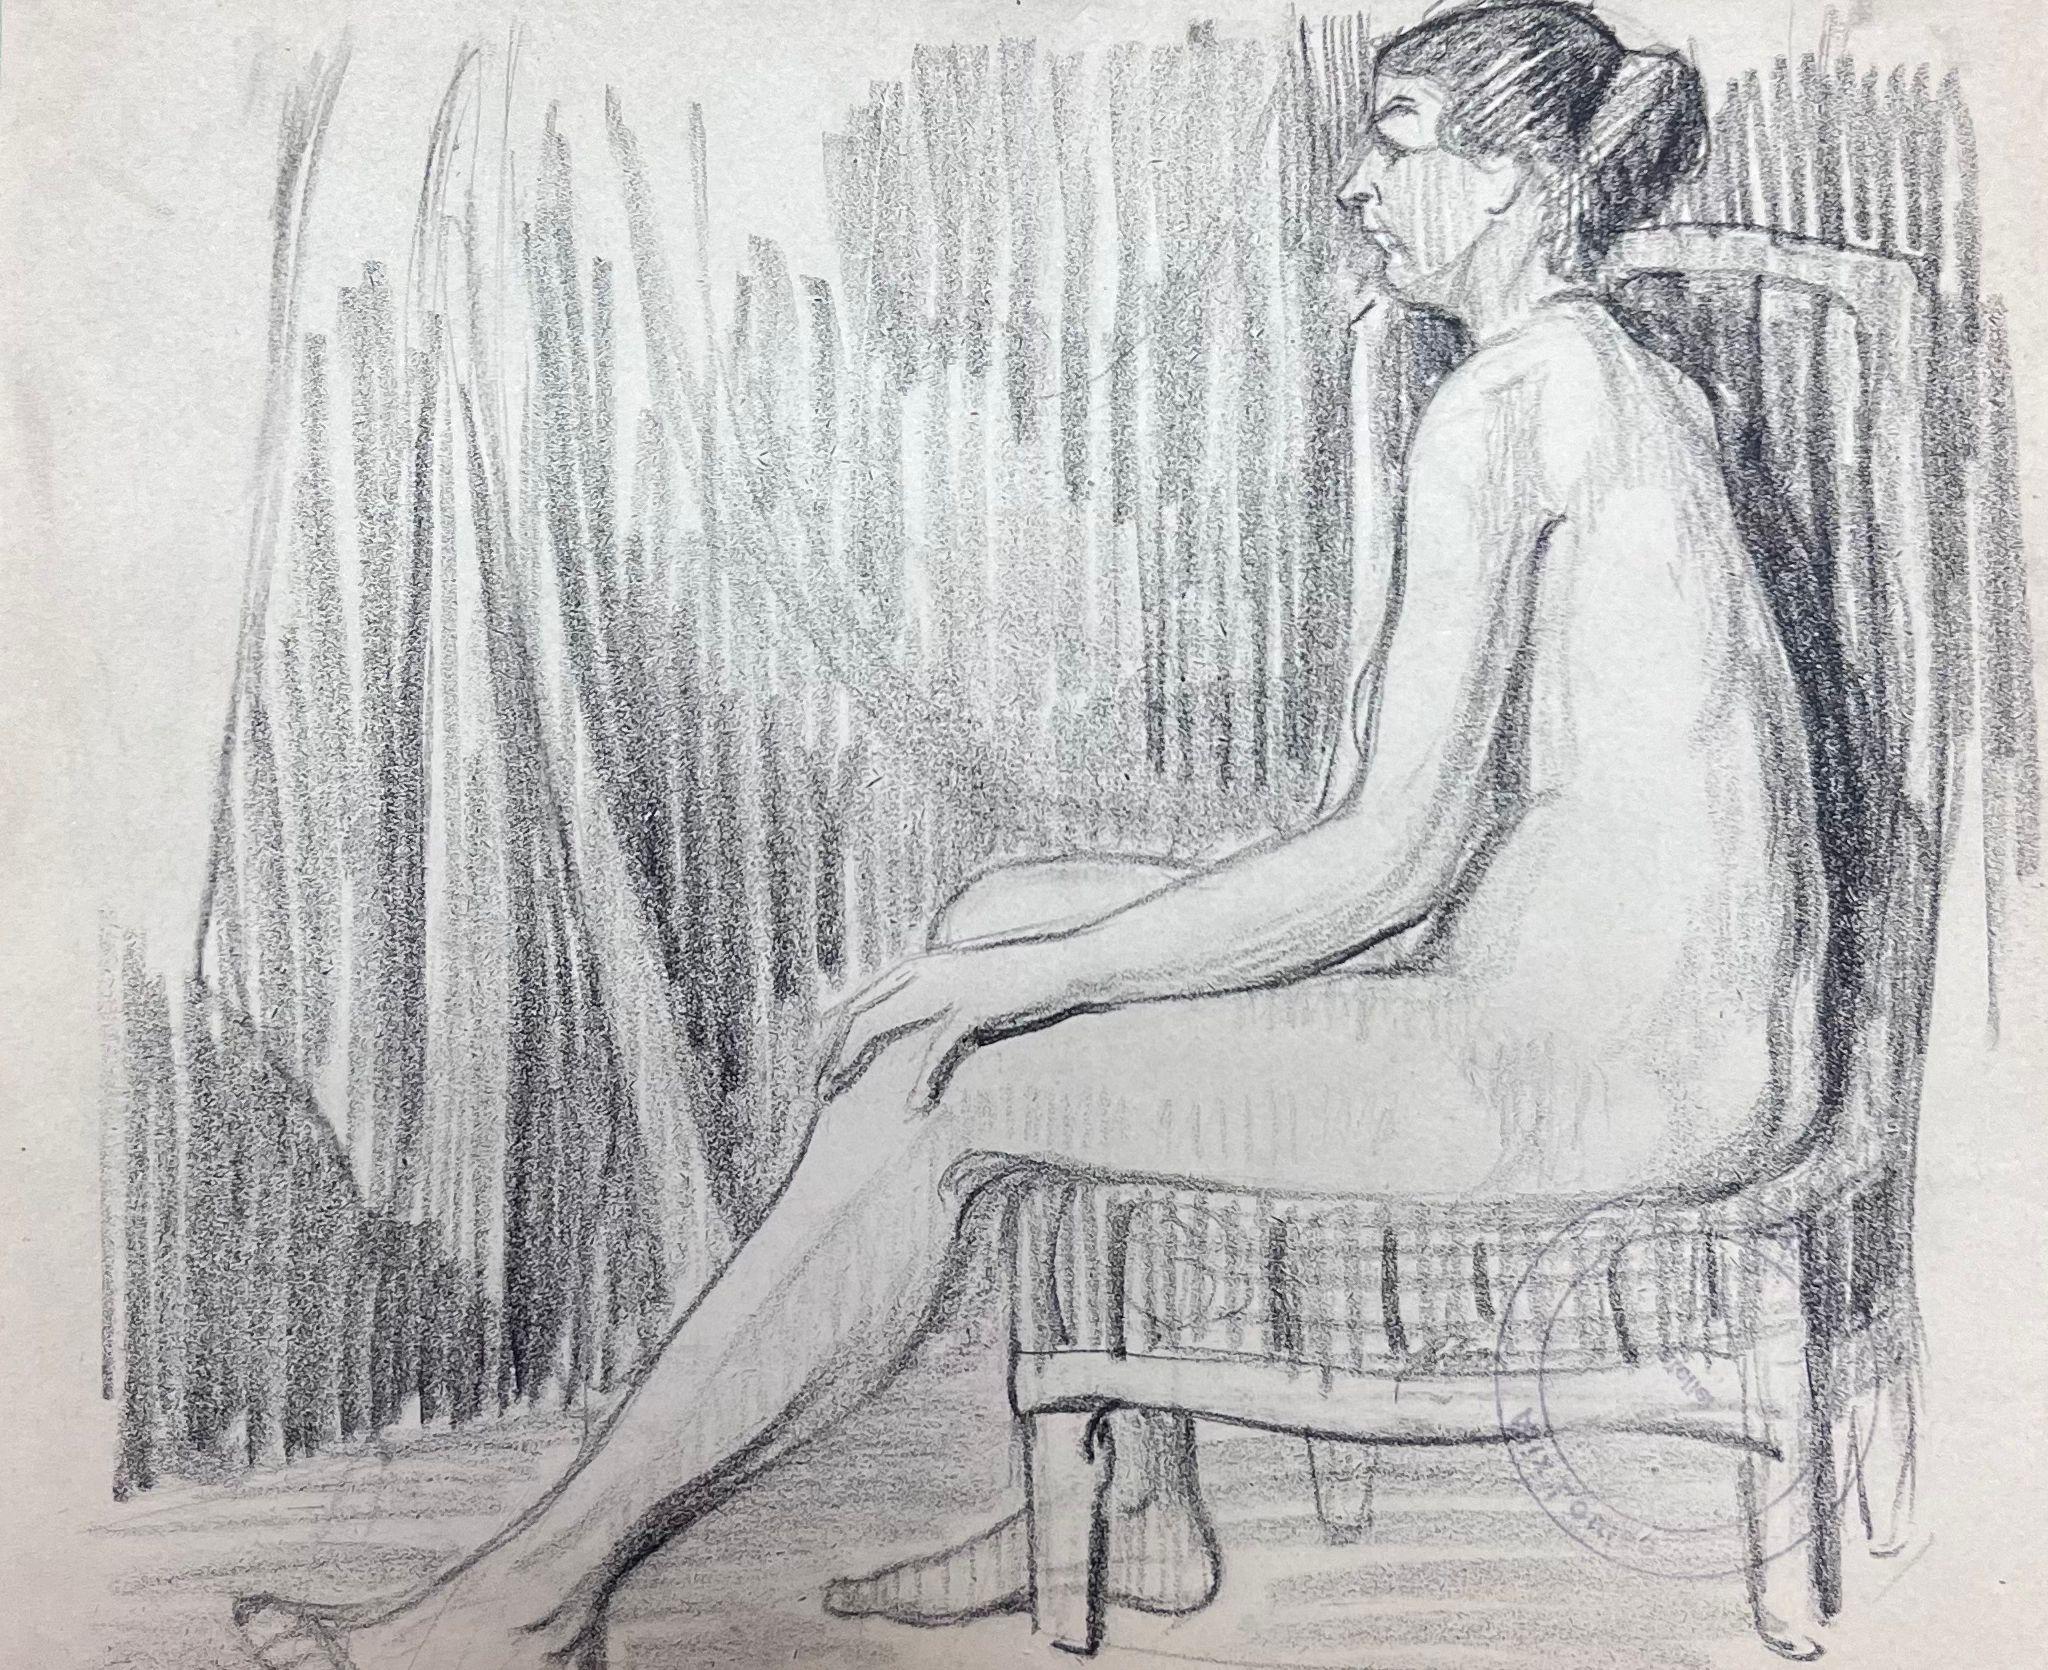 Croquis de modèle féminin nu peint sur un fauteuil de style impressionniste français